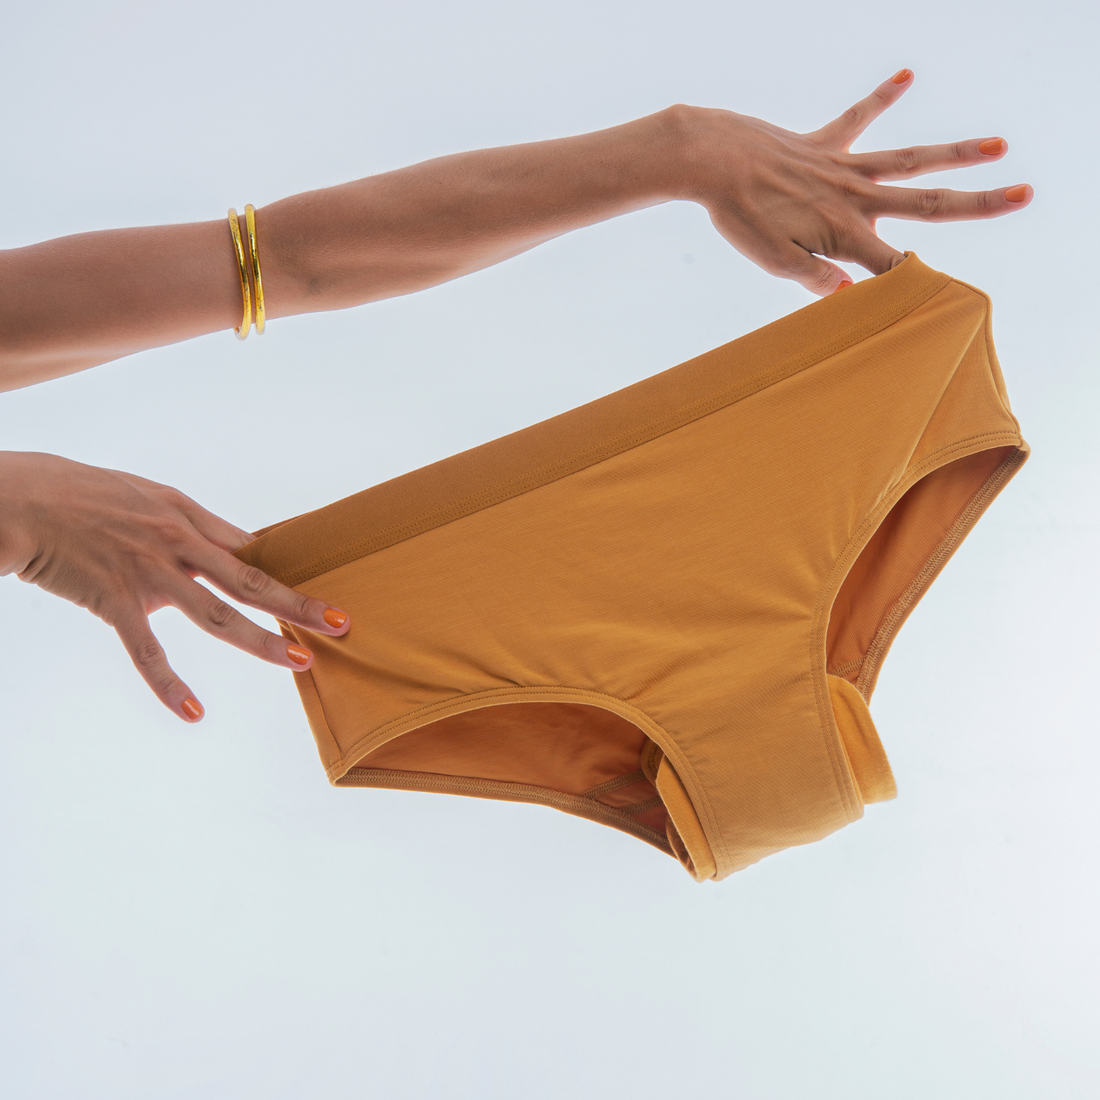 Period Underwear Girls ➤ Get the Game Changer